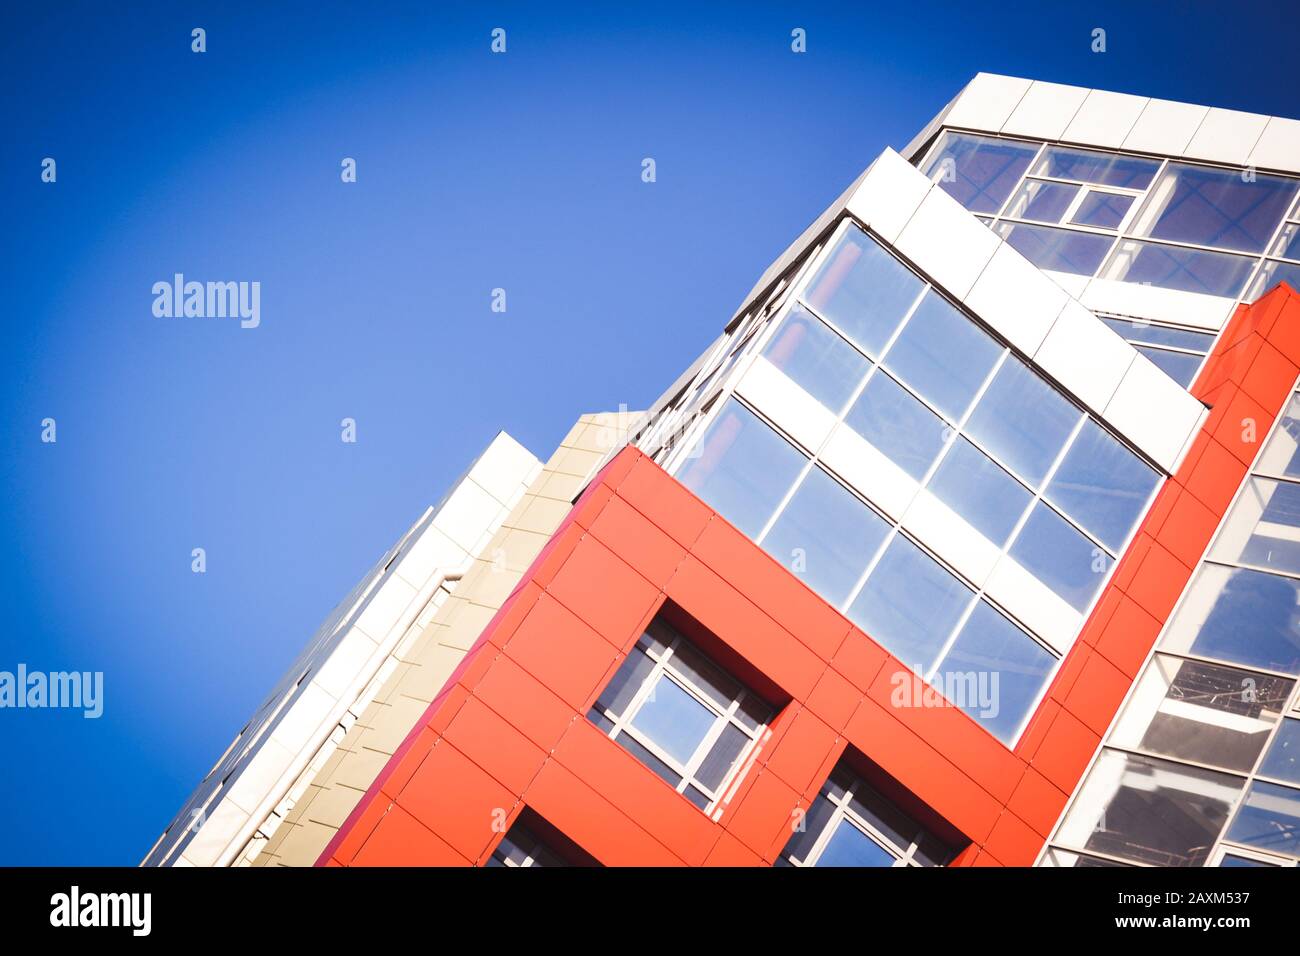 Parte della facciata della casa rossa in stile high-tech con finestre in vetro refrattivo in una giornata luminosa e soleggiata senza nuvole Foto Stock